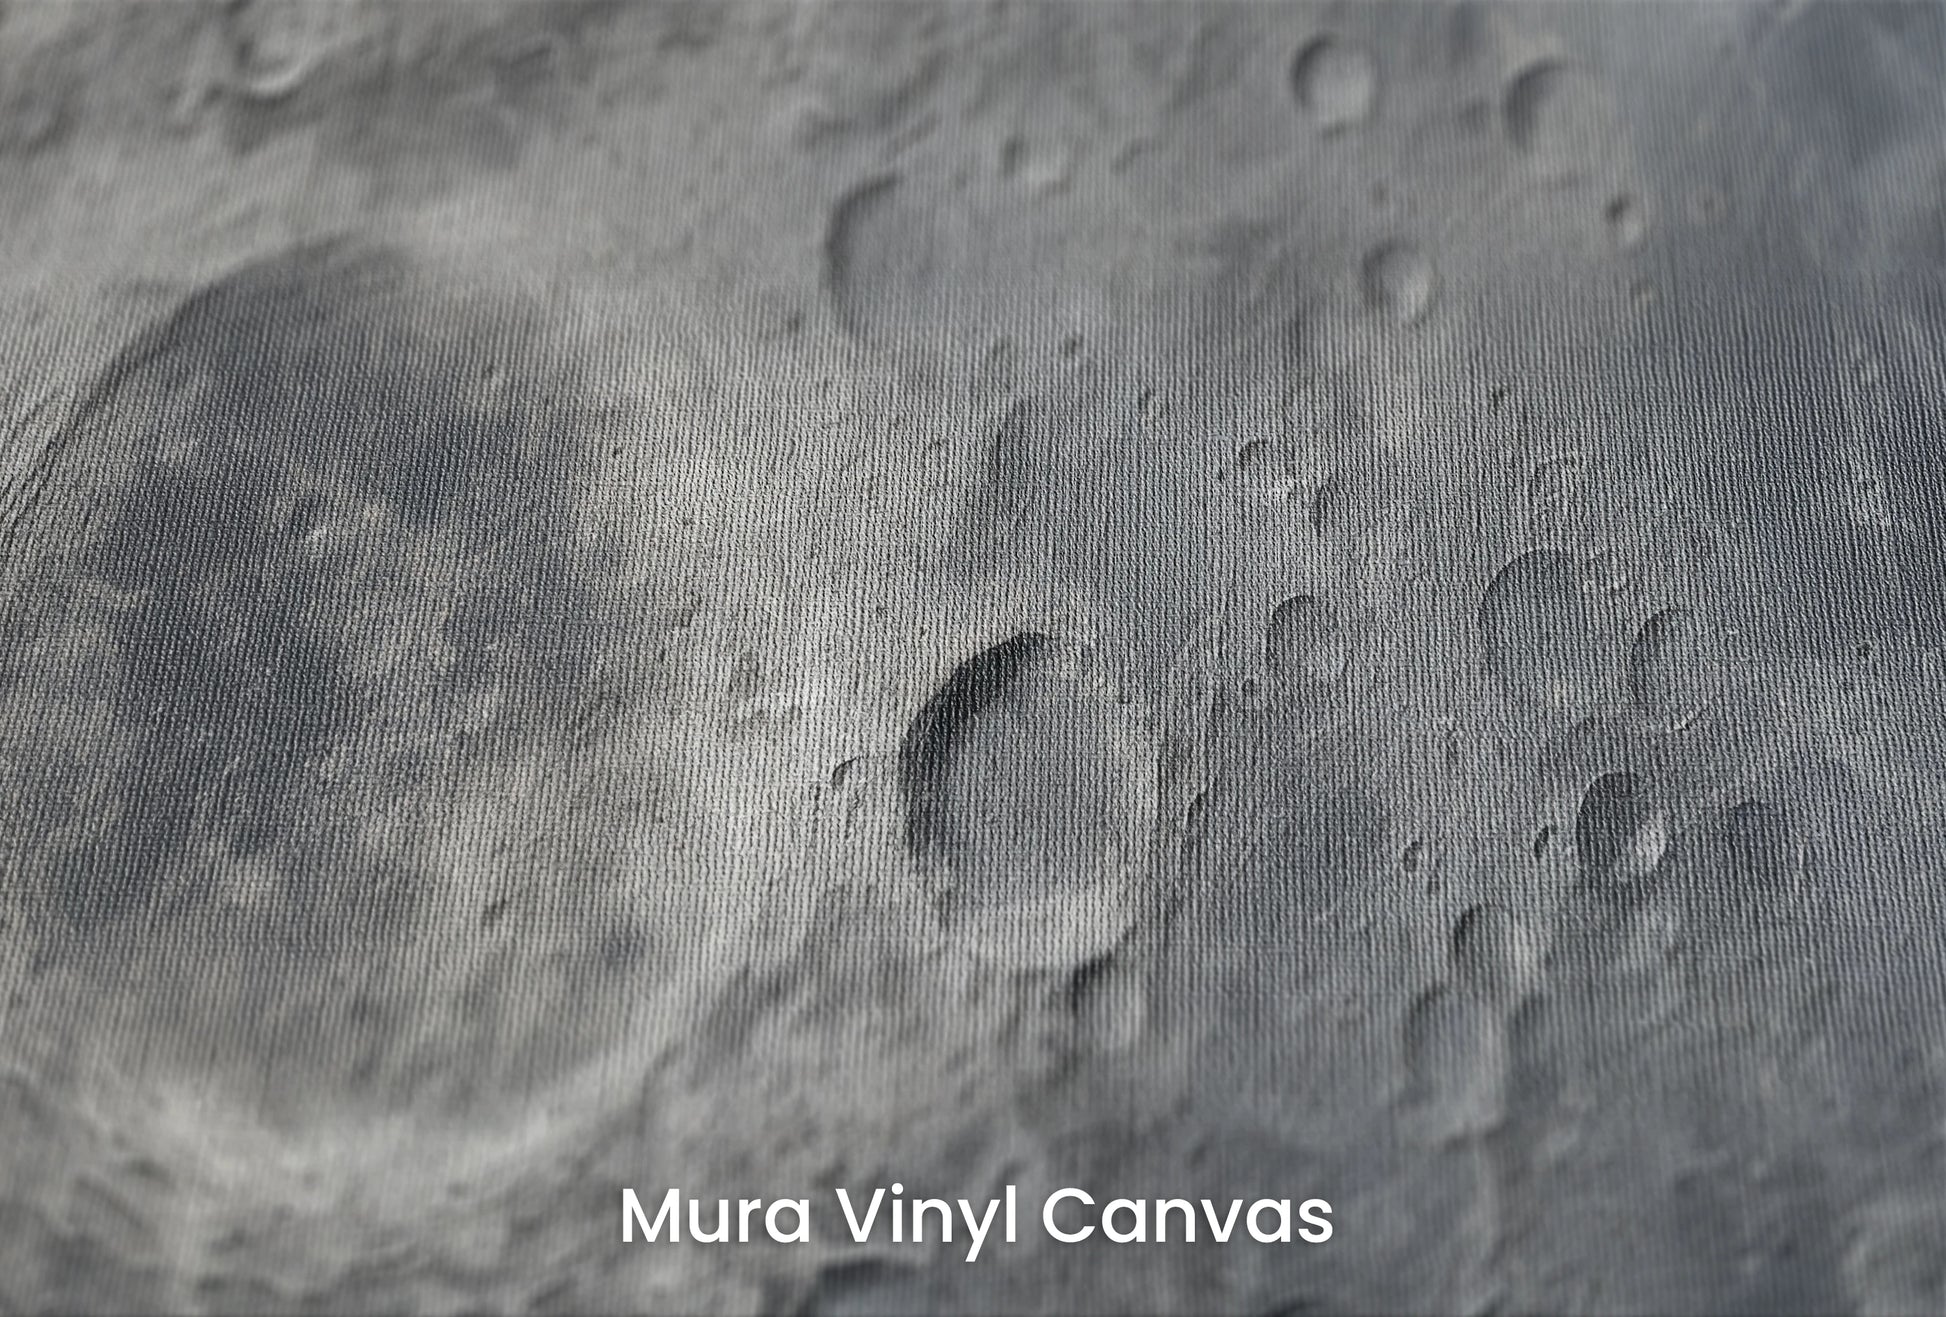 Zbliżenie na artystyczną fototapetę o nazwie Lunar Silence #2 na podłożu Mura Vinyl Canvas - faktura naturalnego płótna.